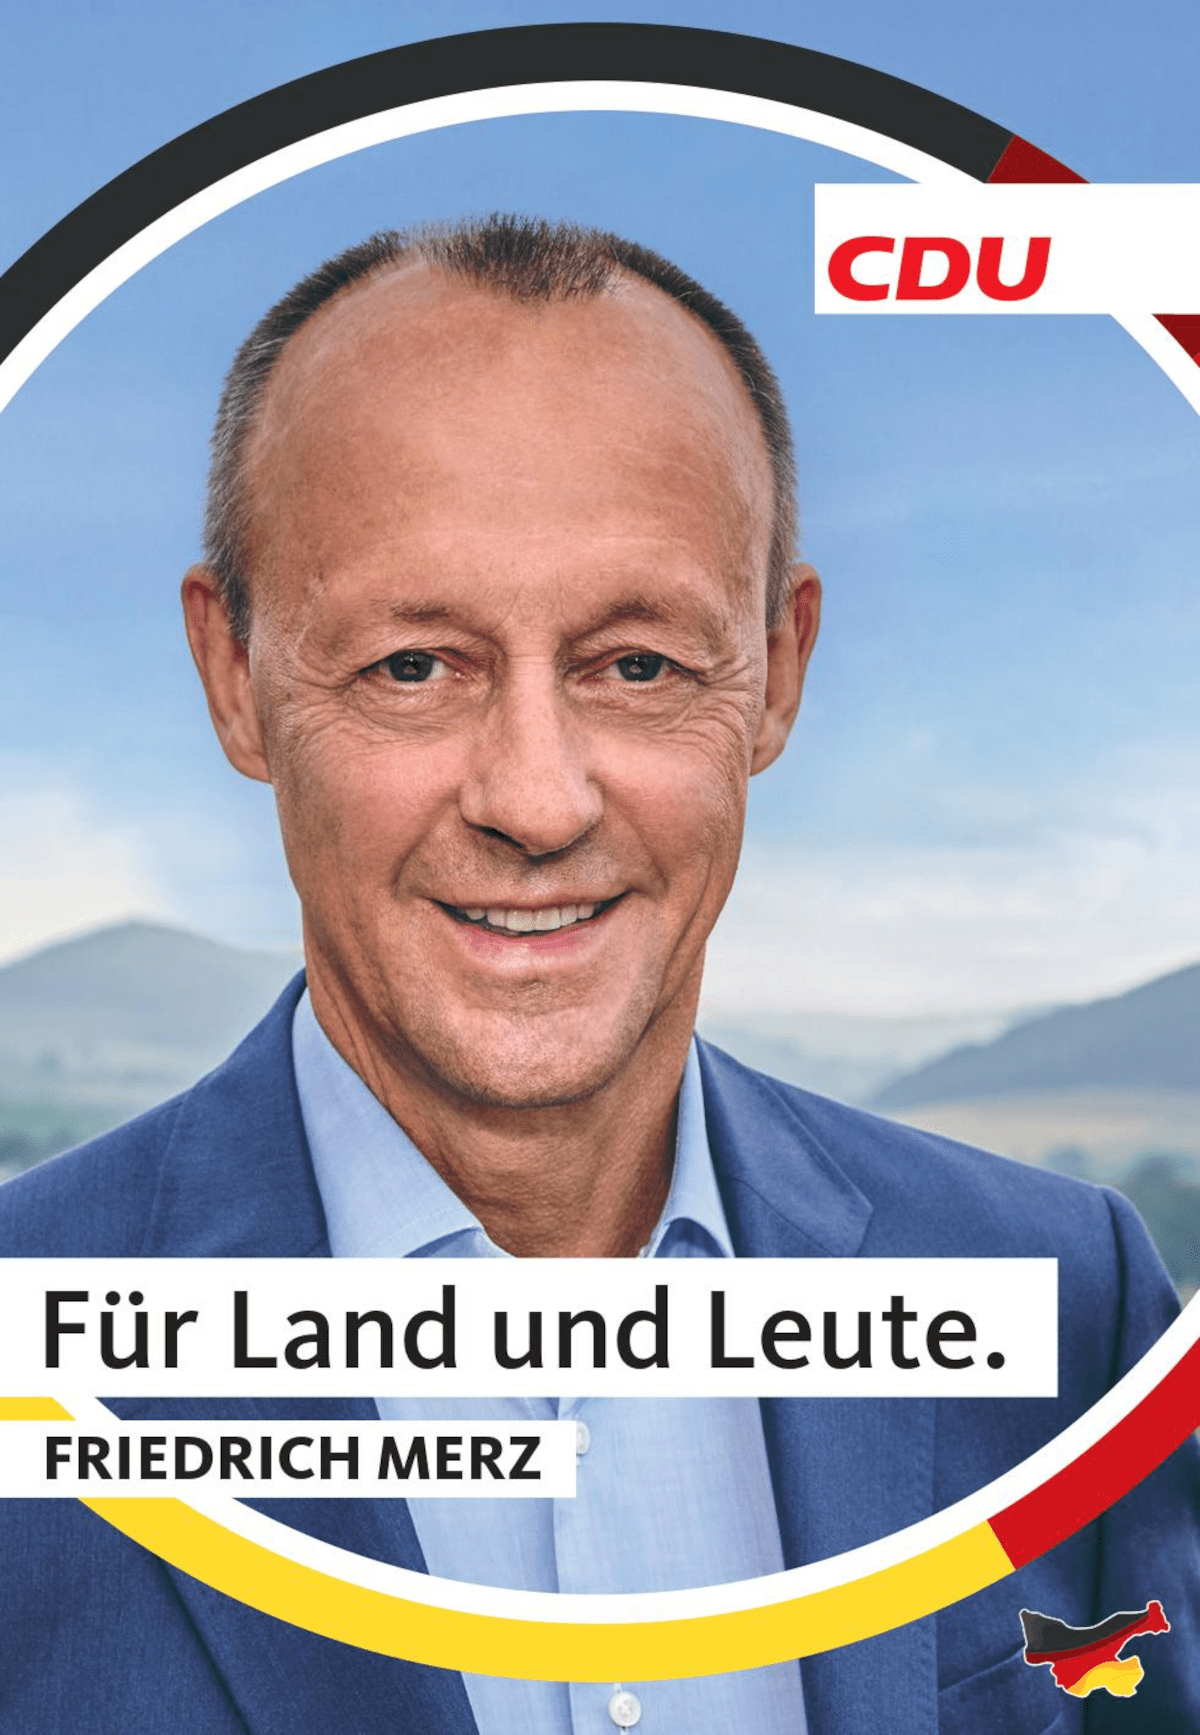 Friedrich Merz CDU